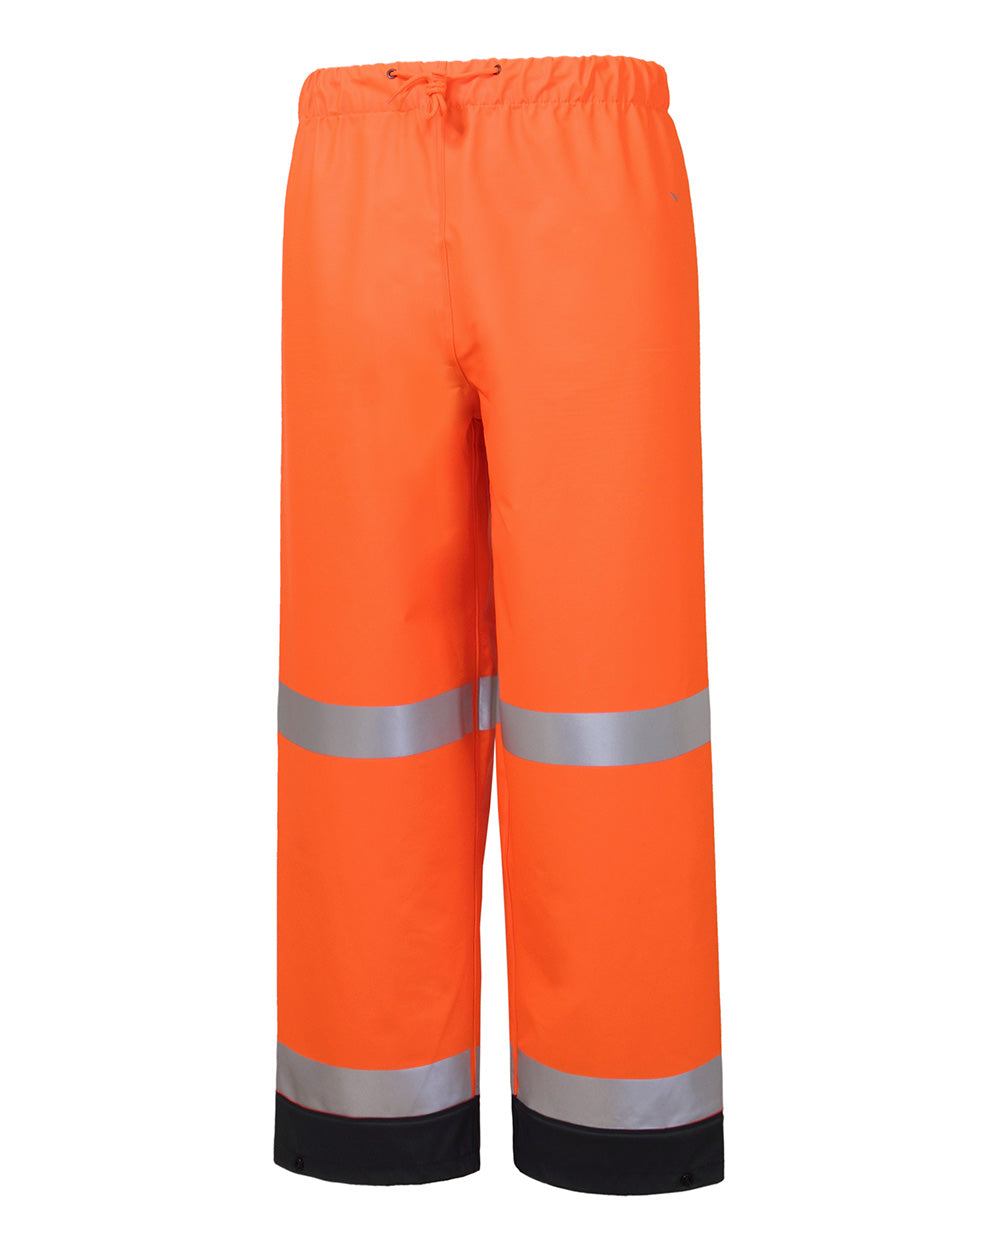 Shelter Pant in Fluoro Orange & Navy